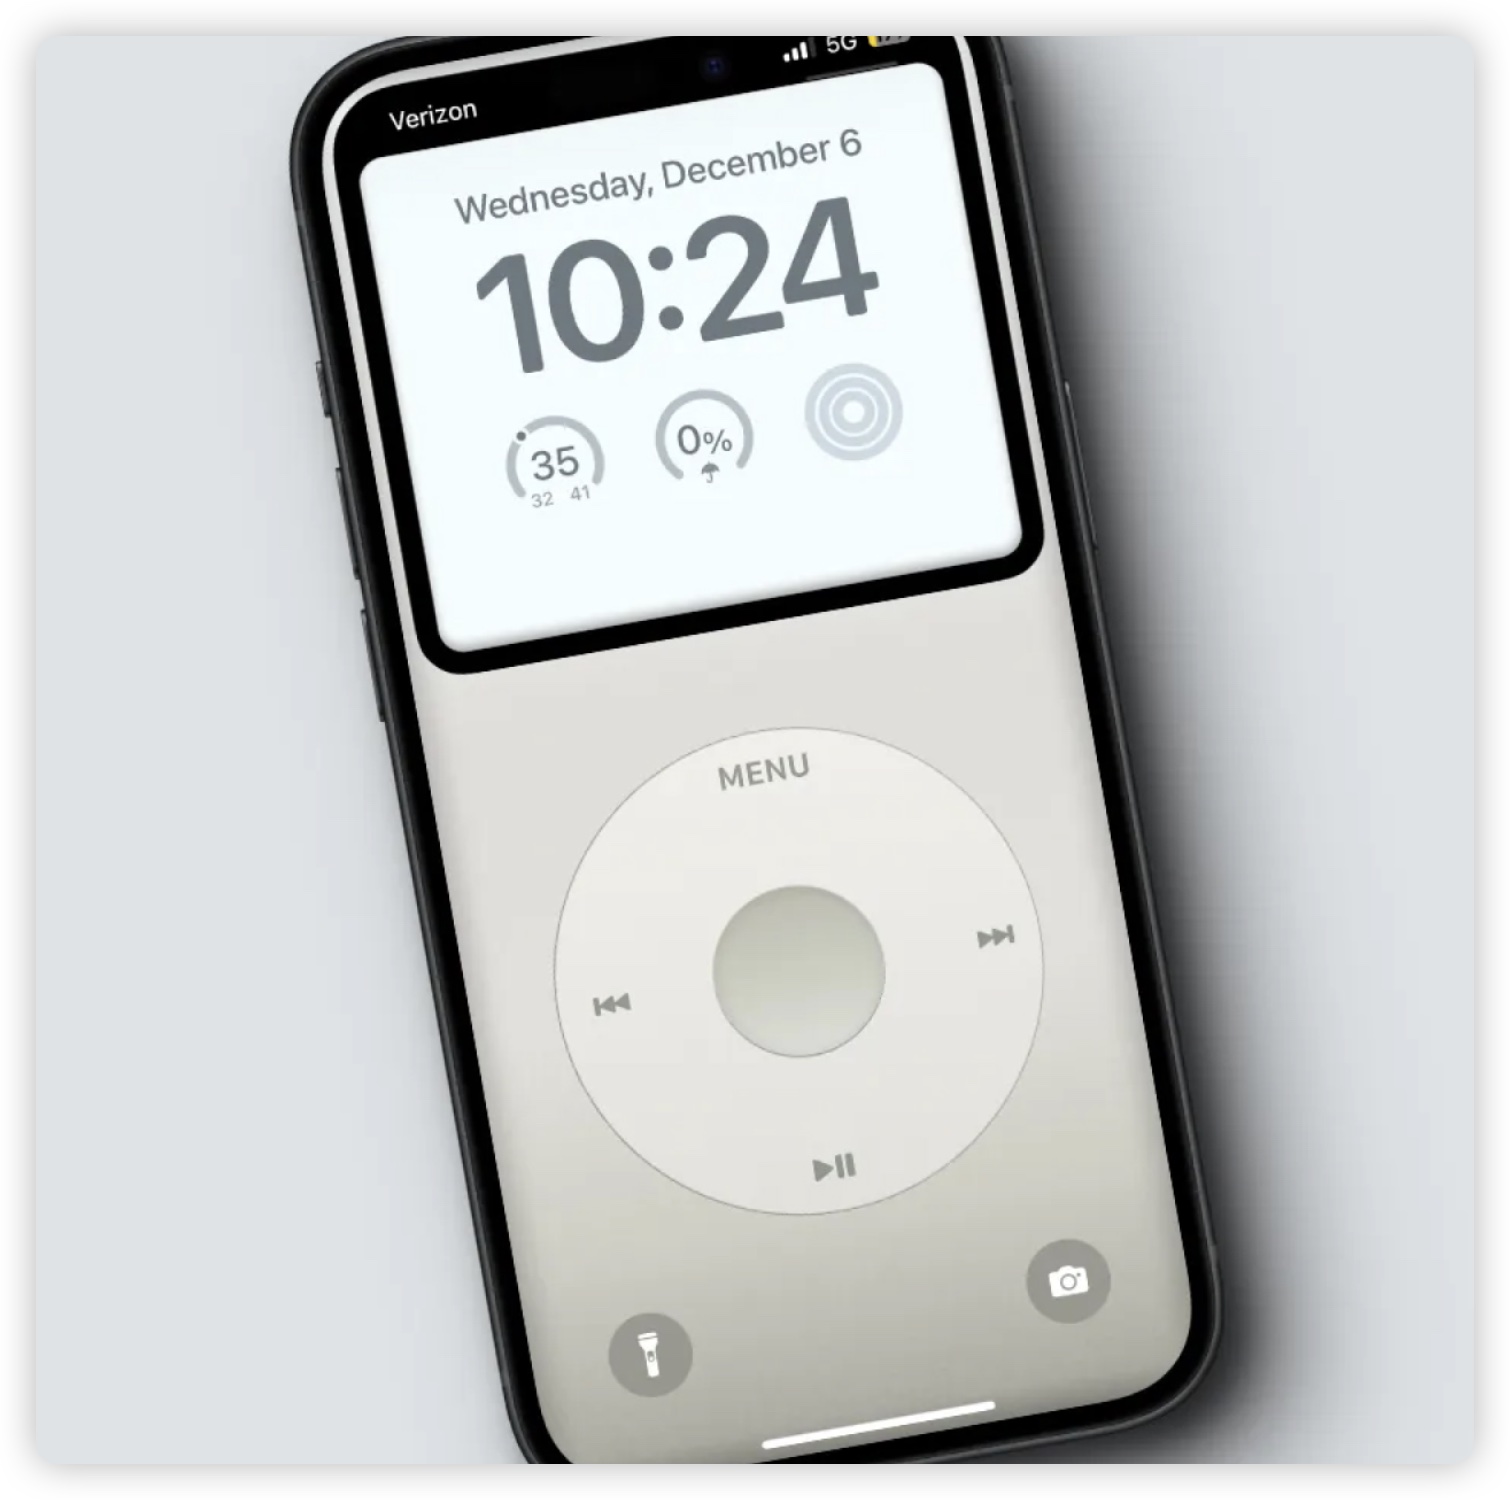 iPhone 桌布 分享 推薦 下載 iPod